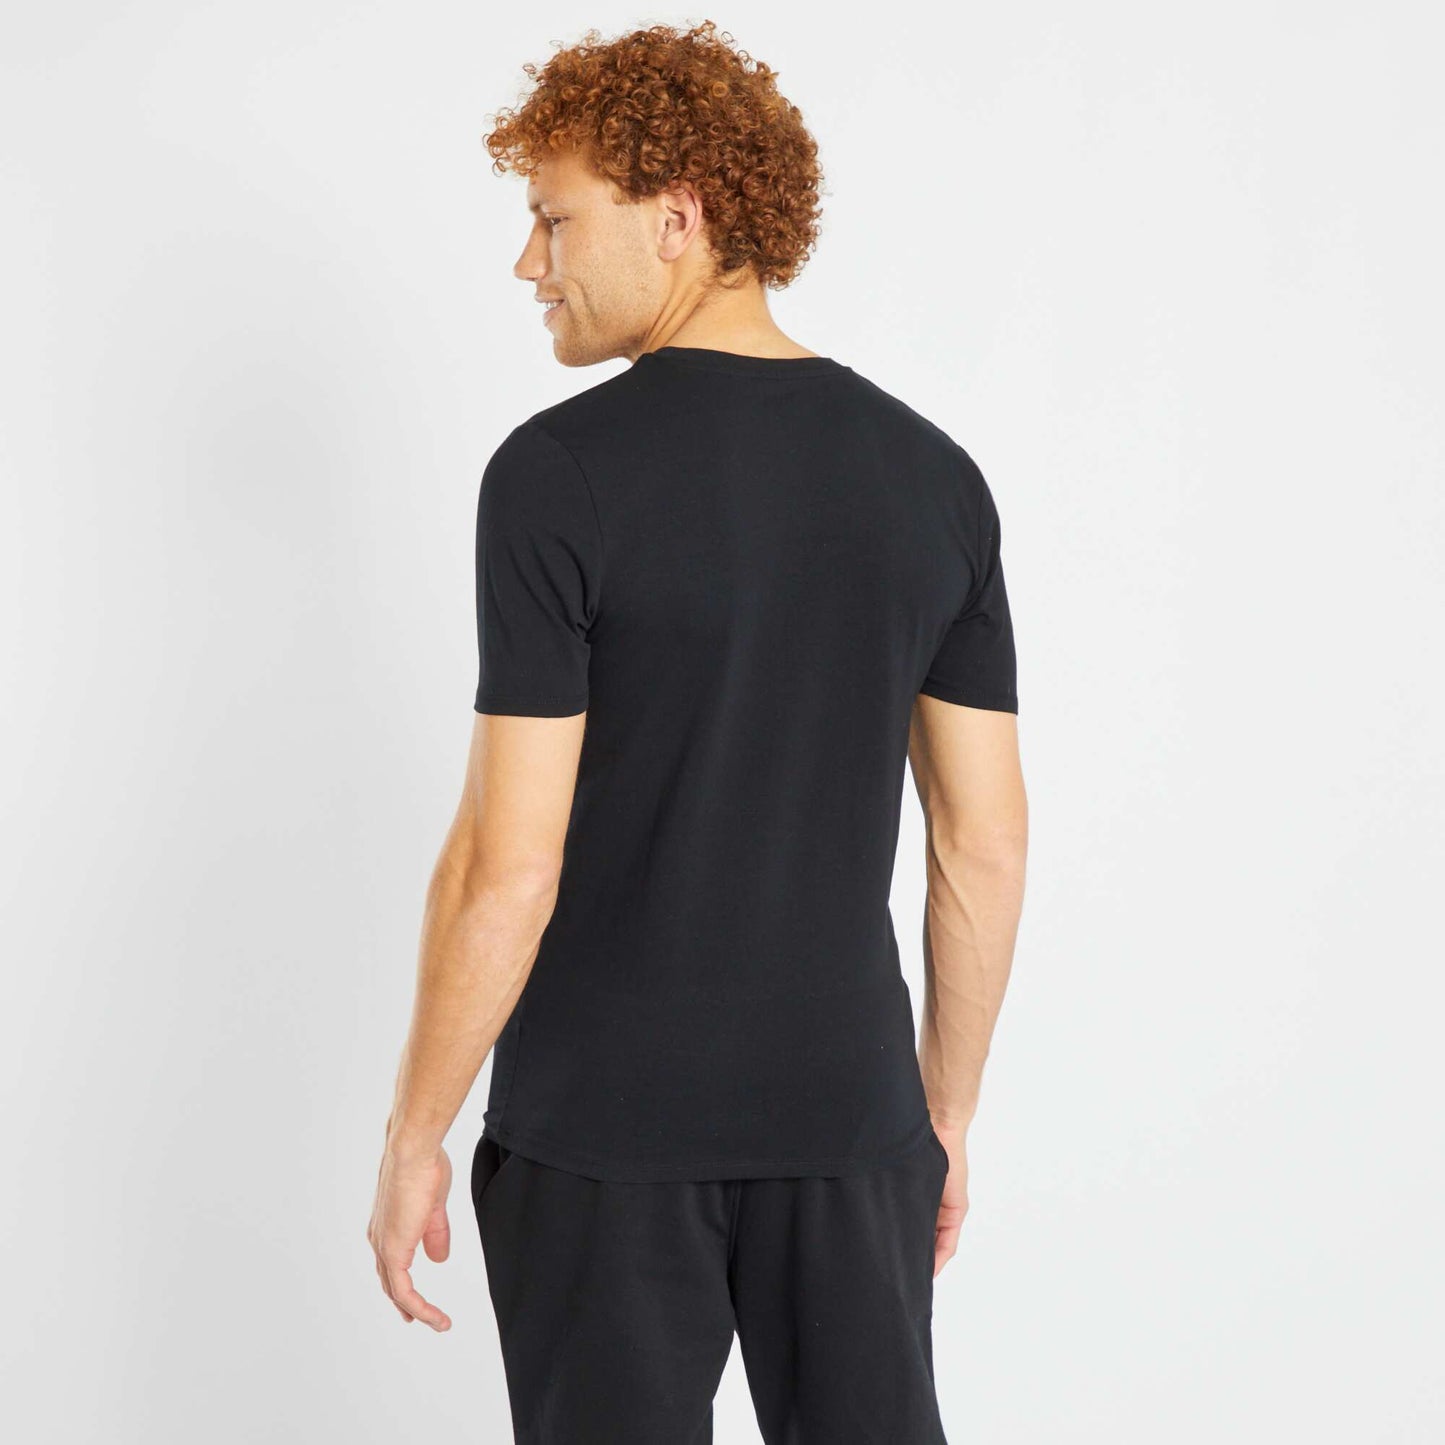 Camiseta de algodón de cuello redondo - Muscle fit negro